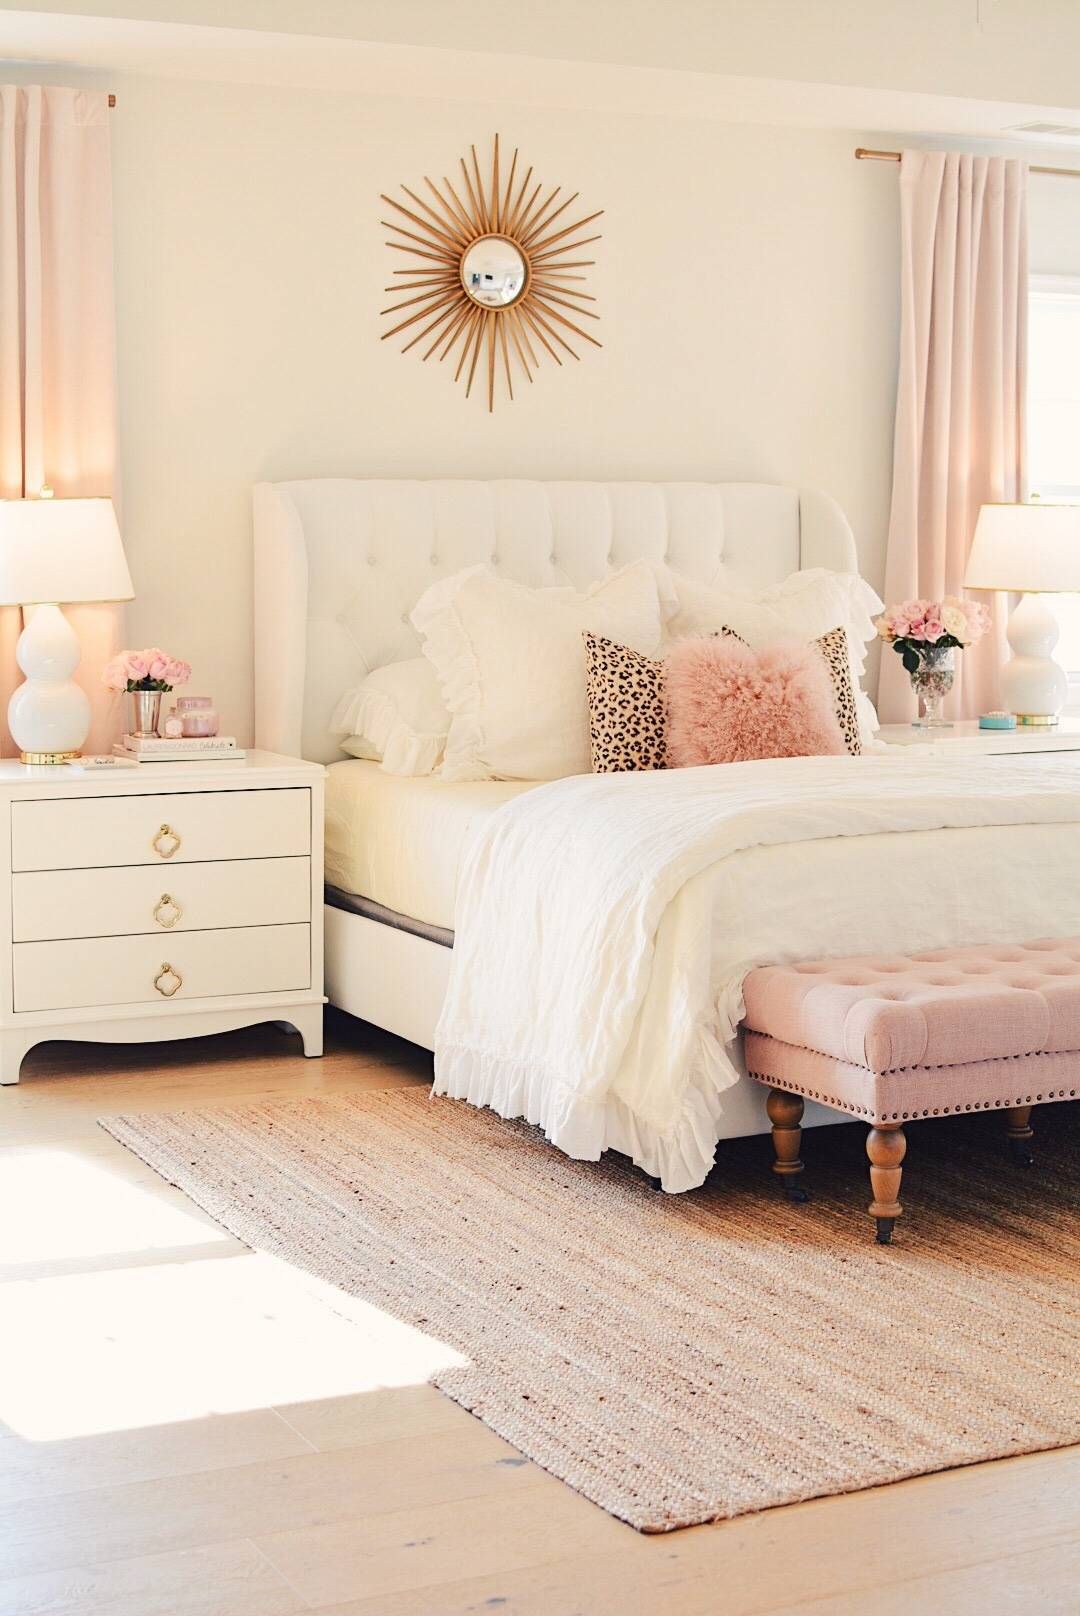 Căn phòng này cũng tận dụng các chi tiết mạ vàng đồng cùng với nguồn ánh sáng tự nhiên để tạo nên hiệu ứng ấm áp cho phòng ngủ tông trắng chủ đạo và sắc hồng pastel làm điểm nhấn.